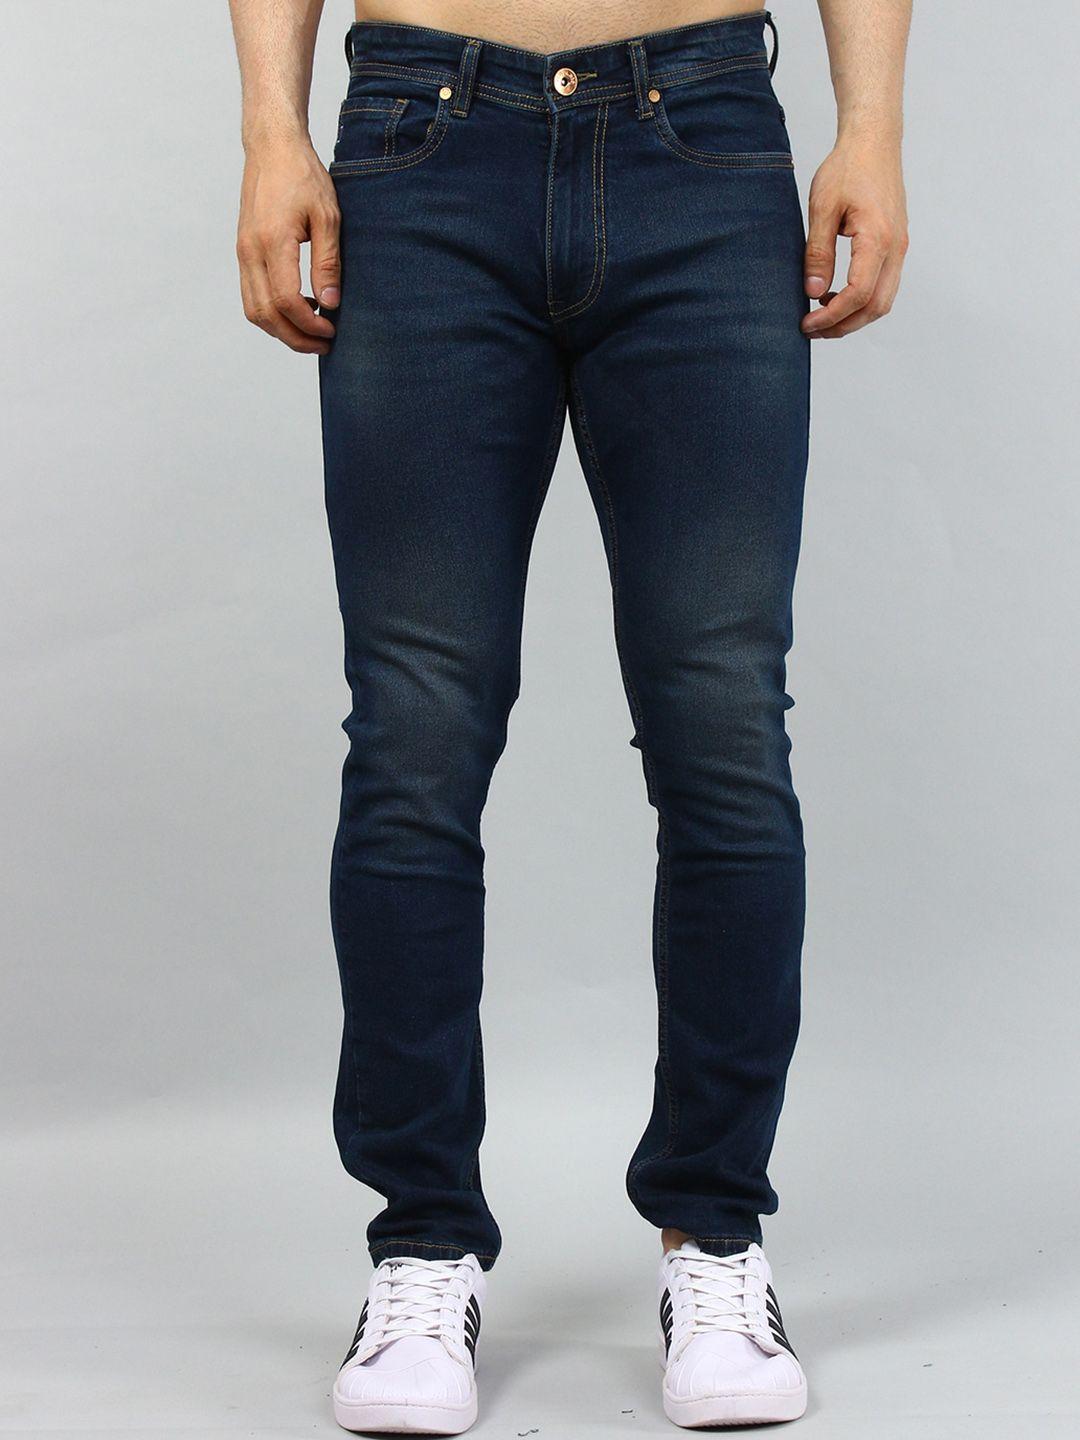 tim paris comfort light fade mid-rise slim fit cotton stretchable jeans